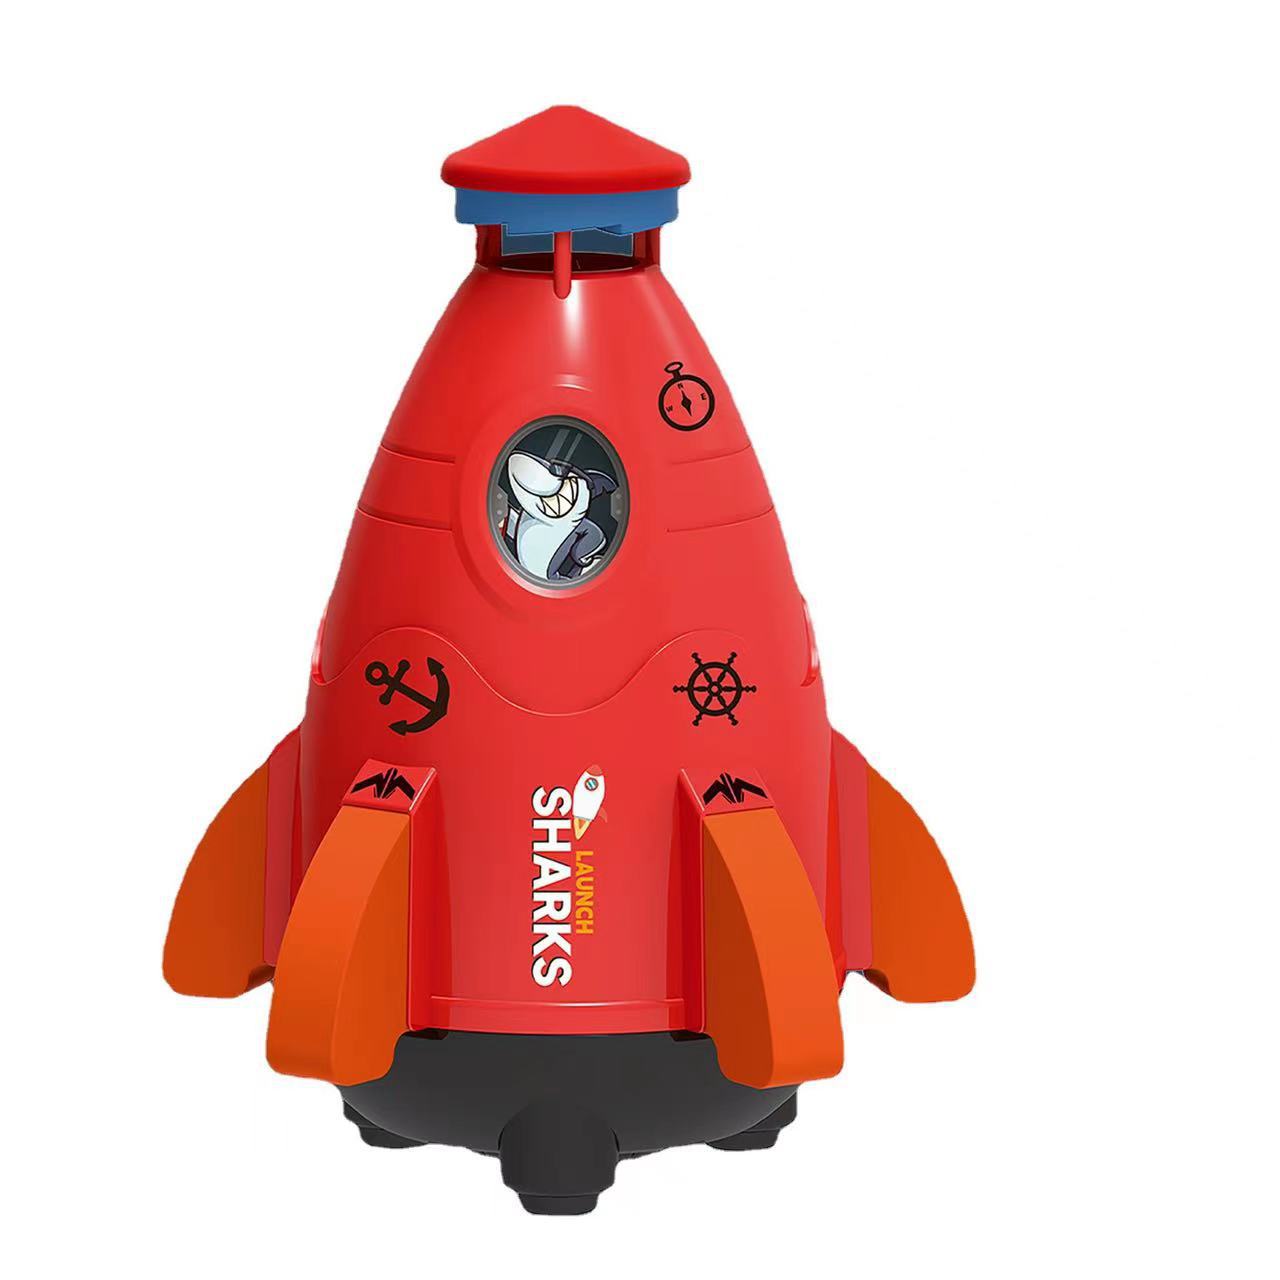 Kawaii Space Rocket Sprinkler Spinner Juguete de agua Niños Nuevo Cool